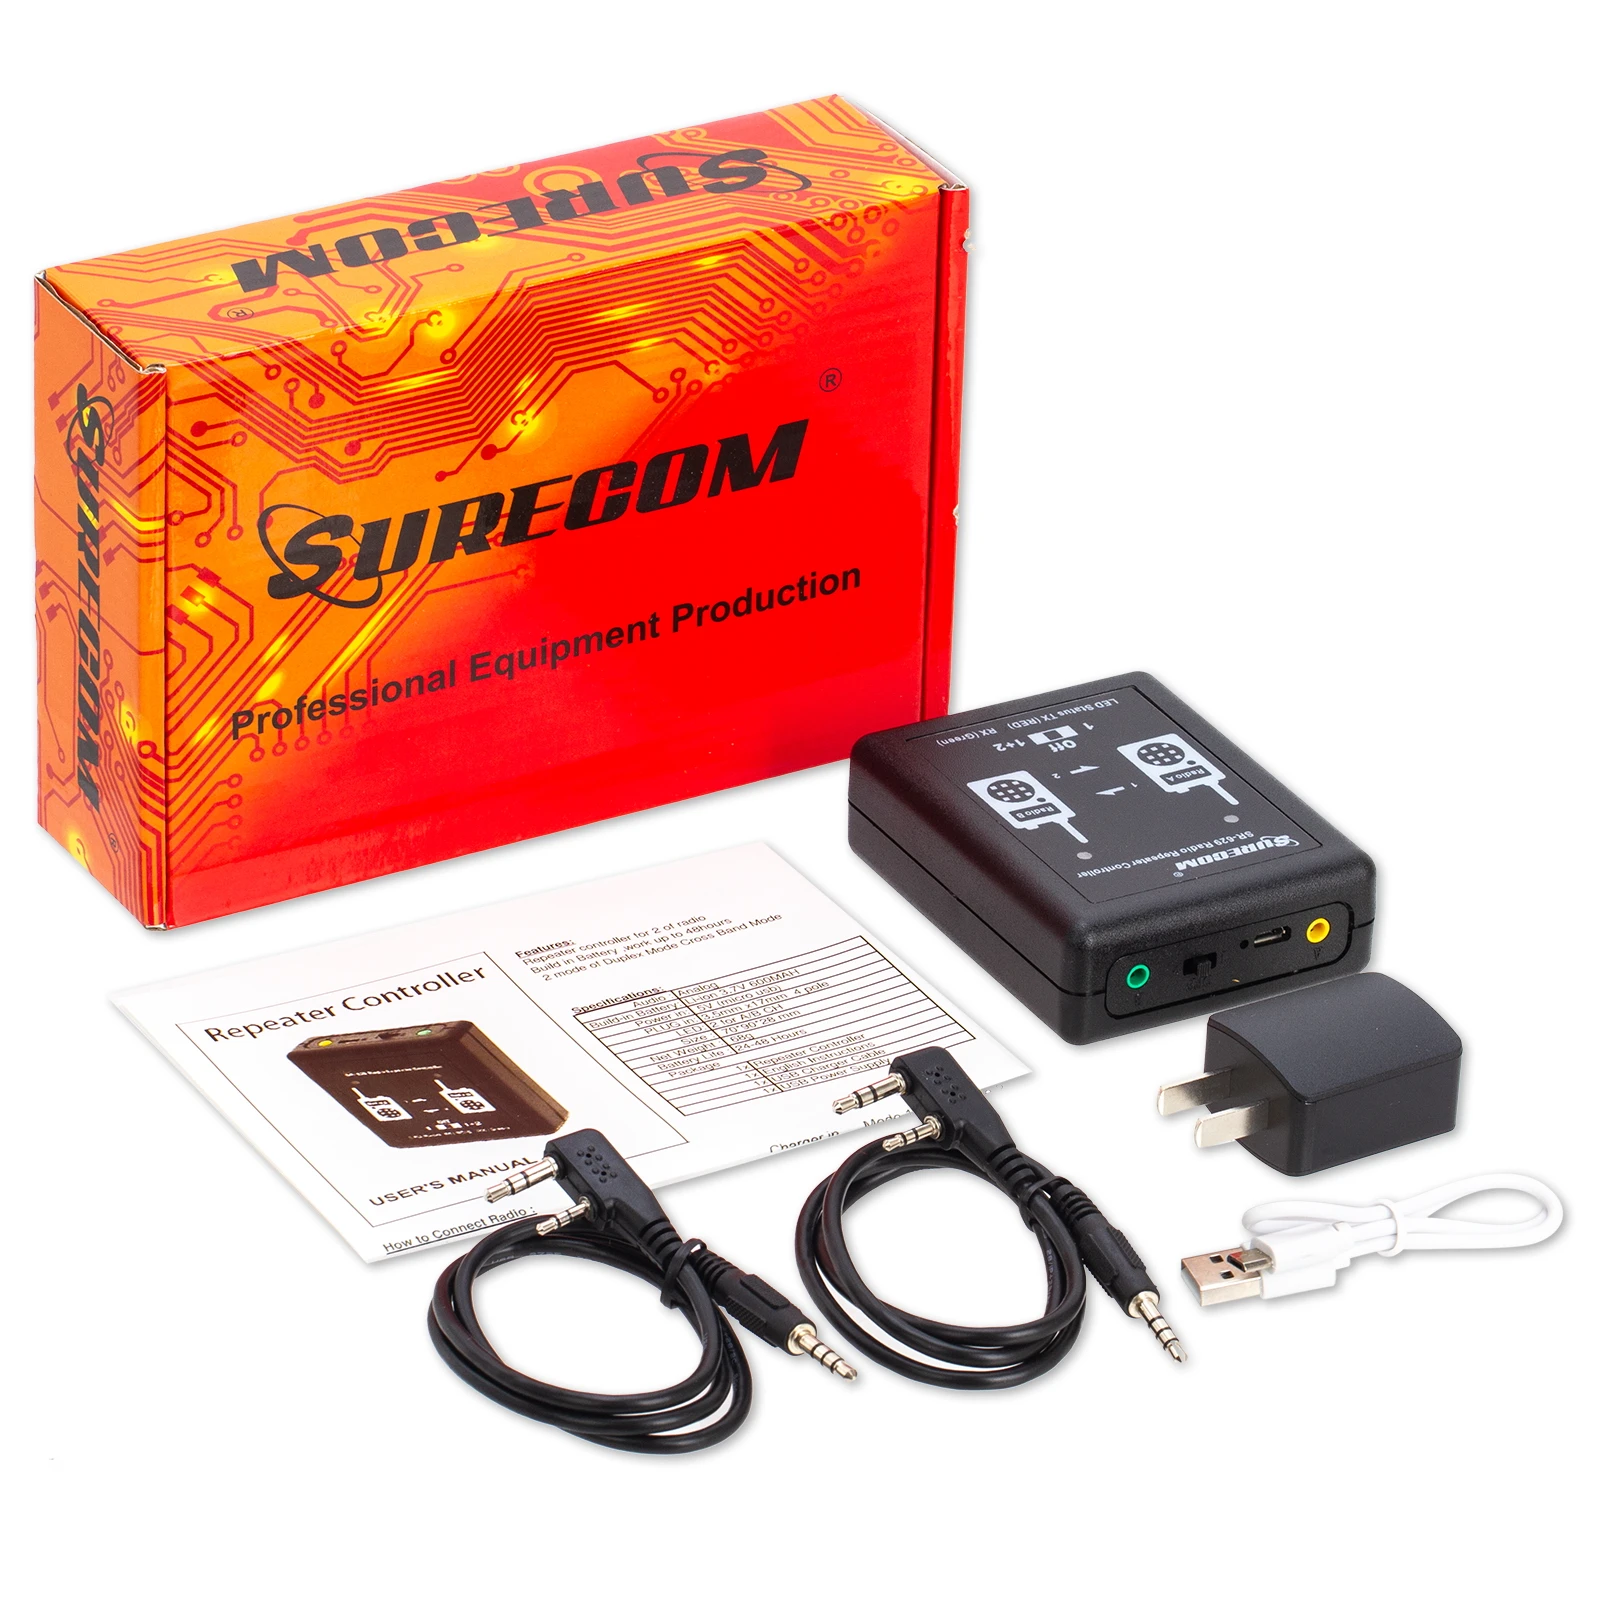 surecom-repetidor-sr-629-para-walkie-talkie-controlador-de-radio-bidireccional-caja-de-rele-sr629